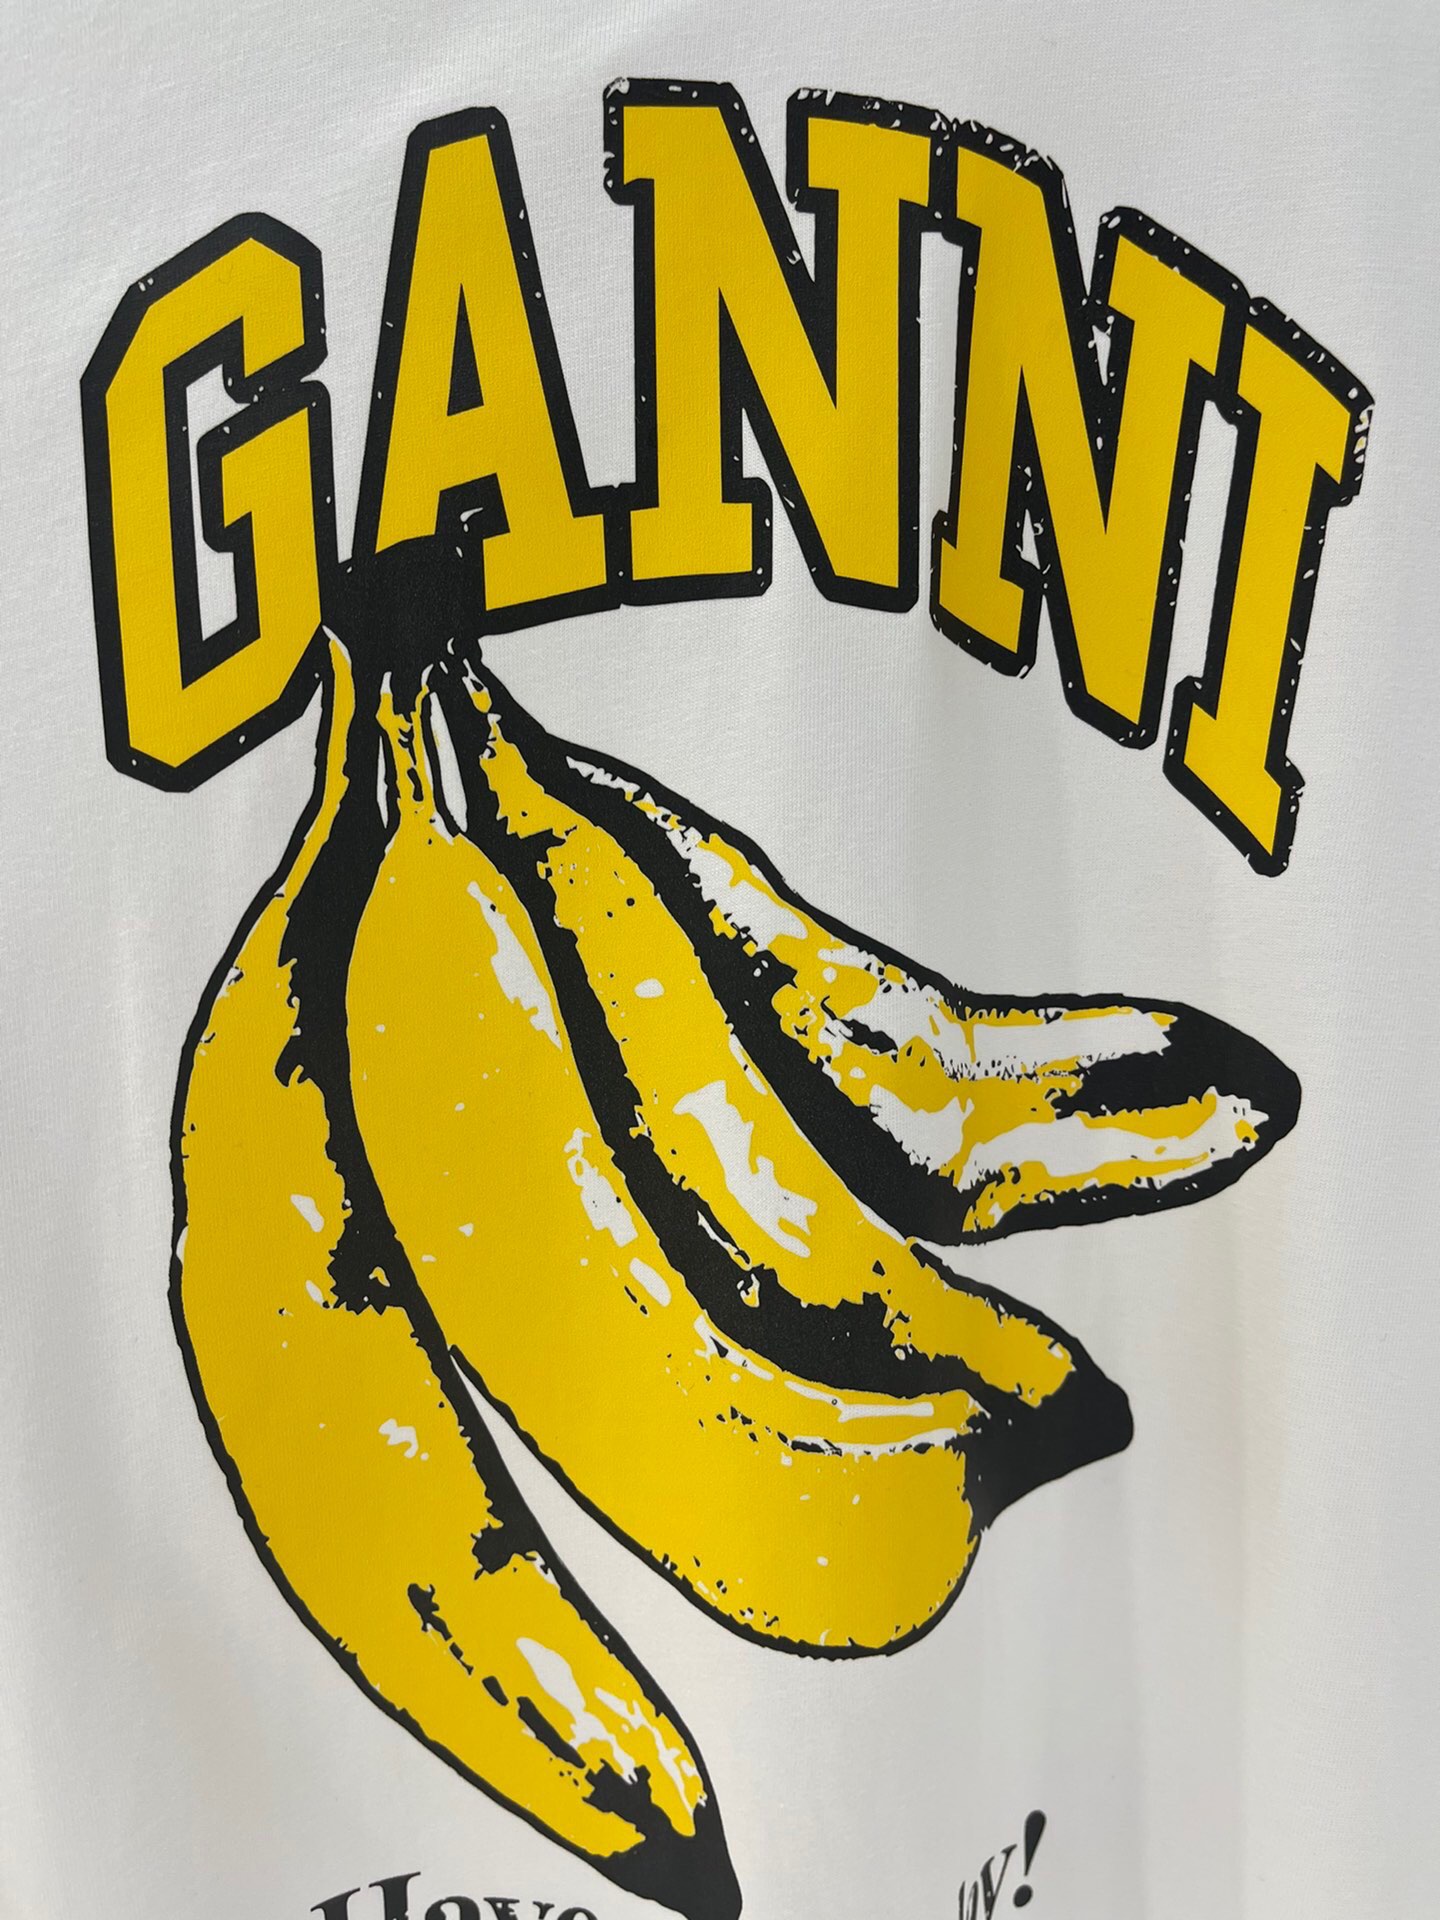 独家首发高端原单品质GAN*I24/新款印花胸前字母香蕉图案短袖T恤低调高级经典版型上身巨显瘦优雅气质减